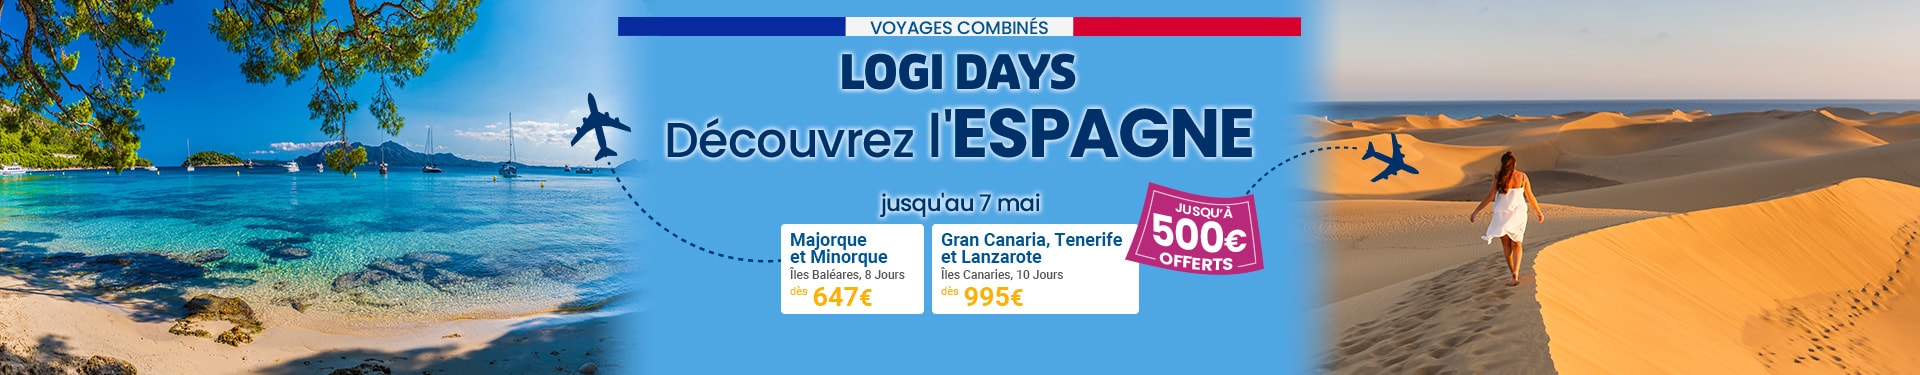 LOGIDAYS Voyages Combinés en Espagne